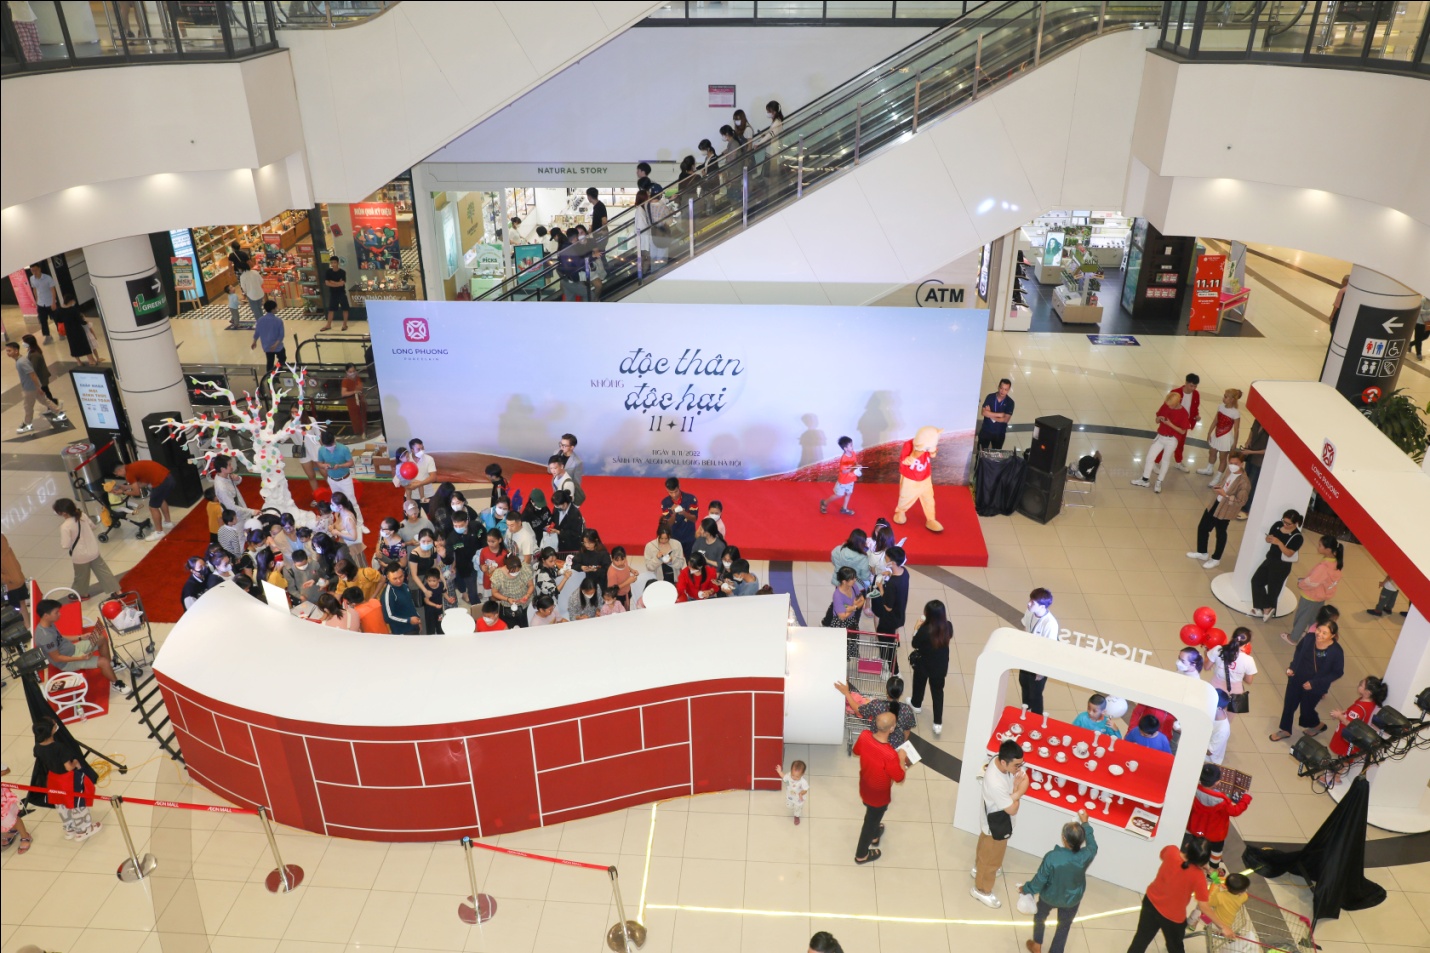 Giới trẻ “đổ xô” tham gia sự kiện “Độc thân không độc hại” tại AEON Mall Long Biên - Ảnh 1.